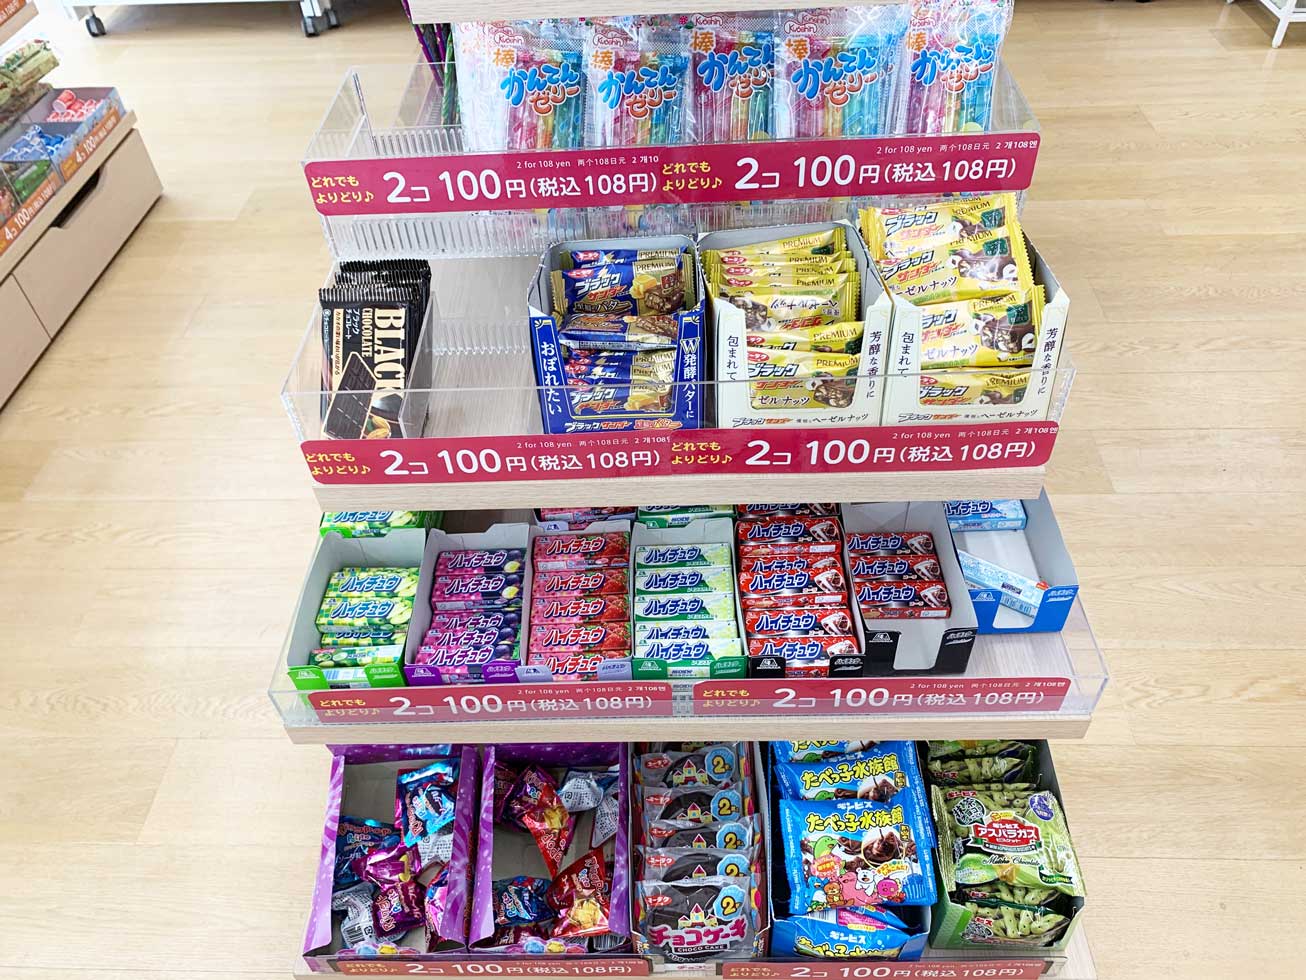 ダイソーの駄菓子種類・価格一覧。3個100円・4個100円など色々な価格帯で提供